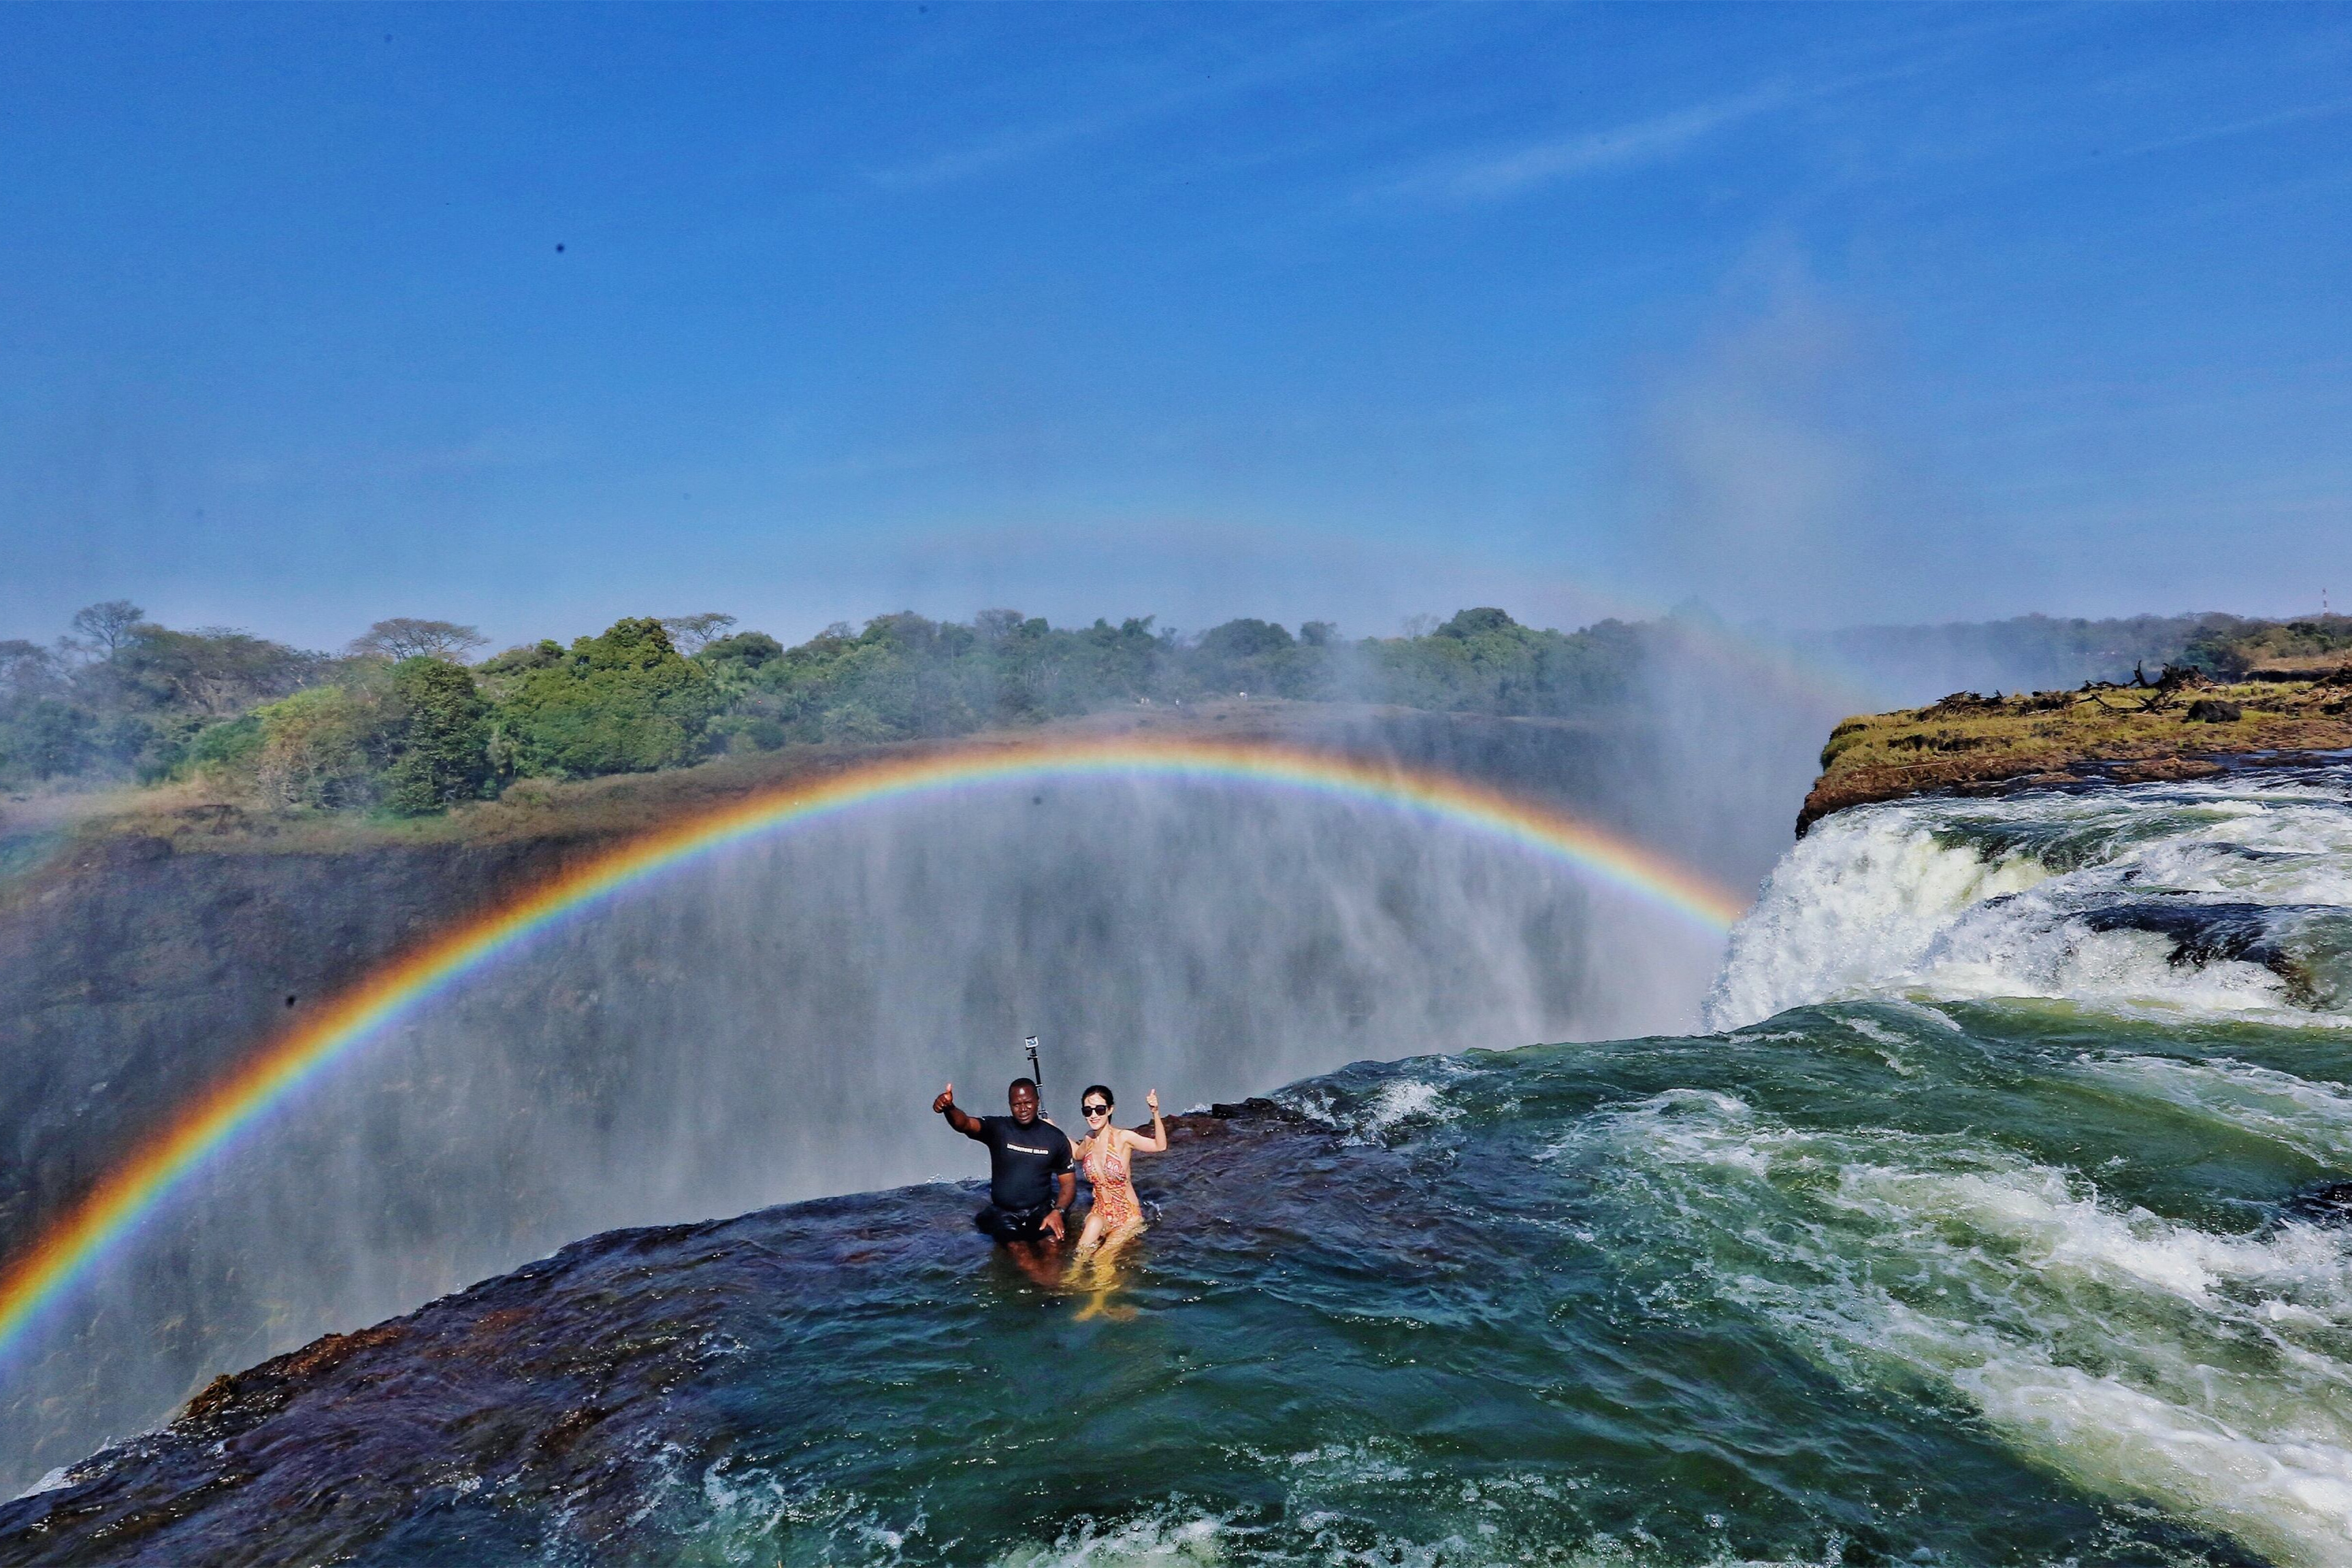 令人难忘的赞比亚维多利亚瀑布:大自然杰出的交响乐